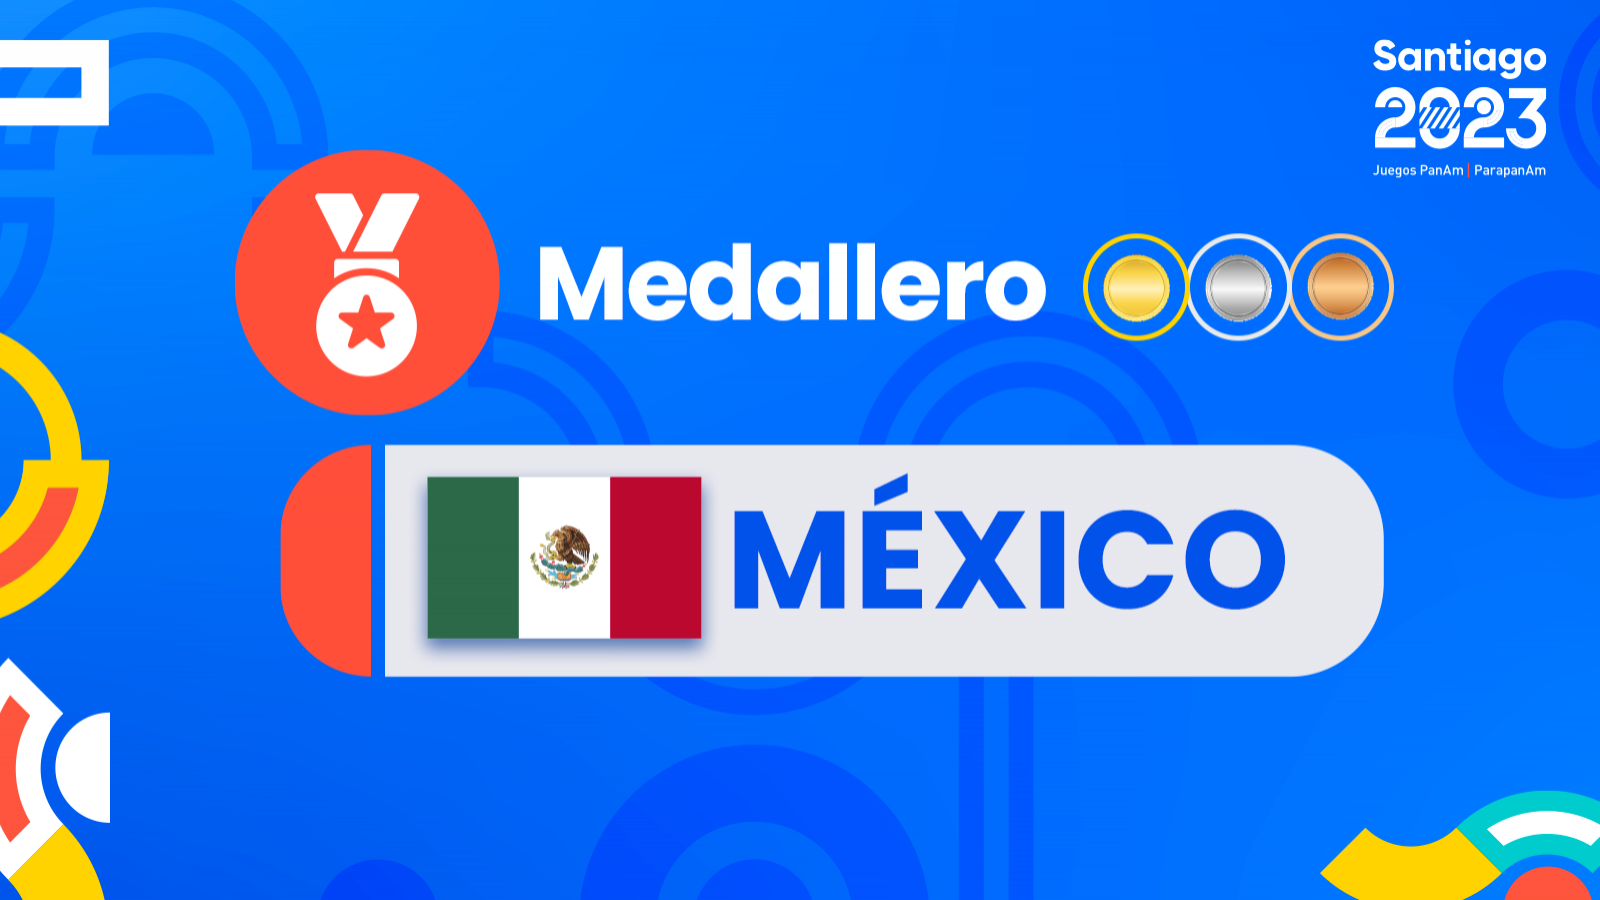 Medallas y medallero México juegos panamericanos Santiago 2023.